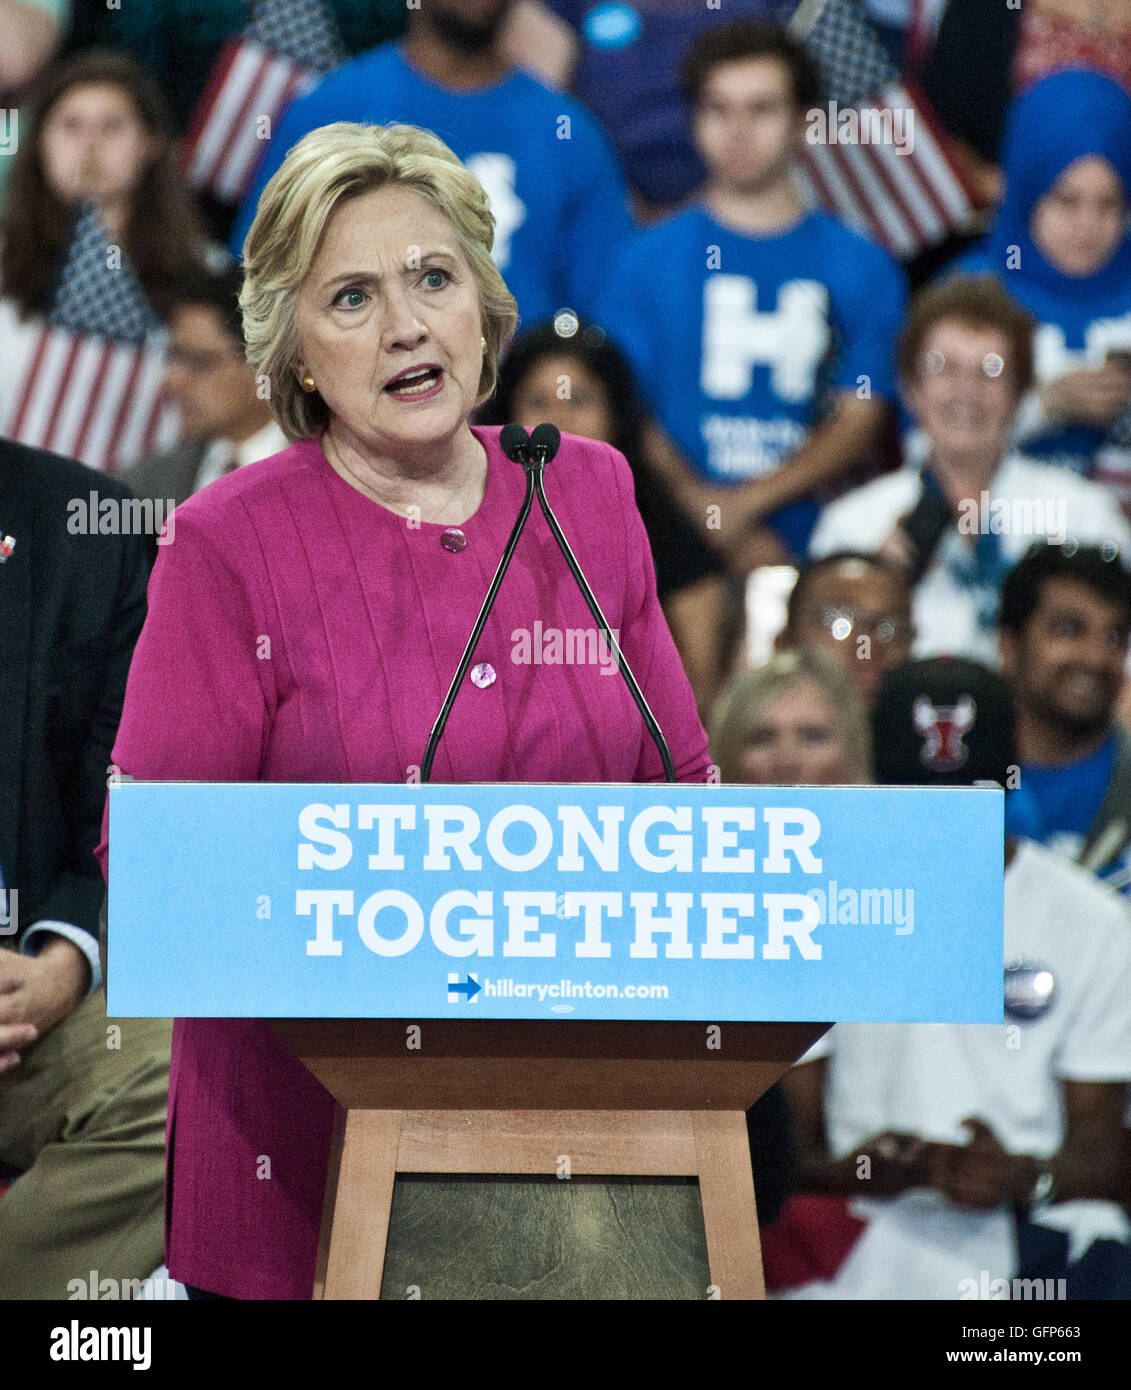 Philadelphia, PA, Stati Uniti d'America. 29 Luglio, 2016. Hillary Clinton e Tim Kaine di campagna presso McGonigle Hall presso la Temple University. Foto Stock